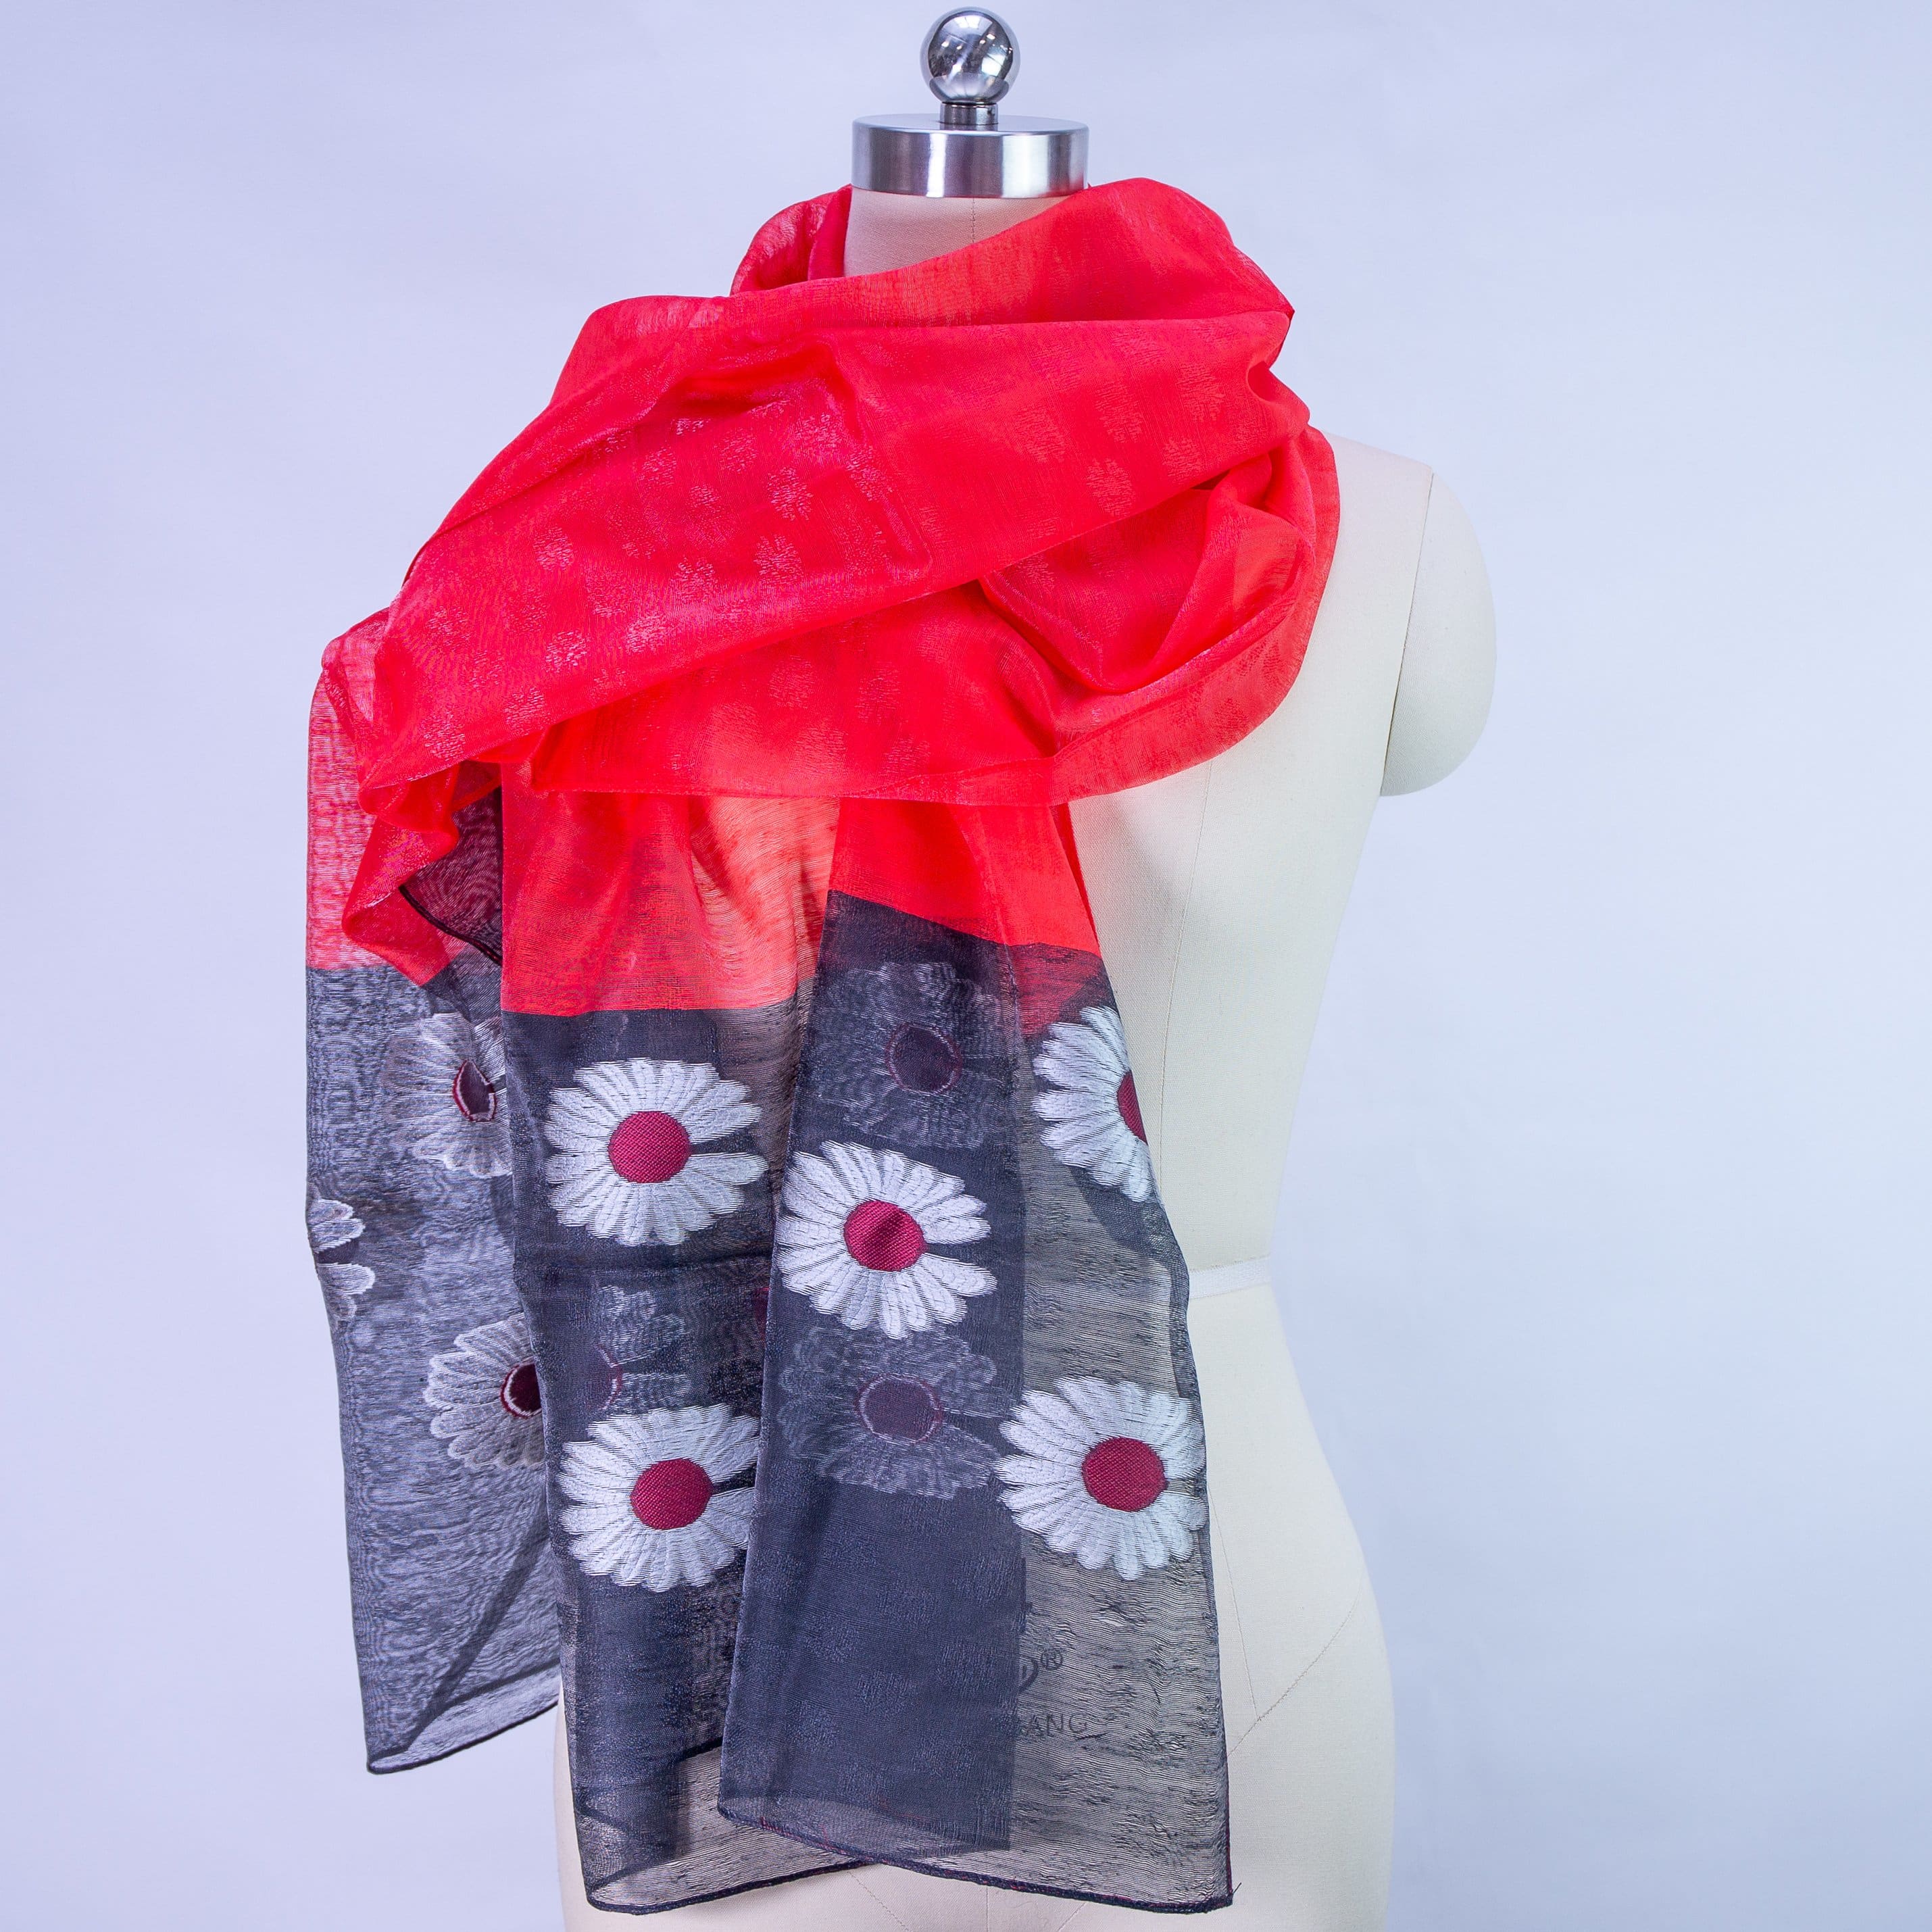 shawl Caroline - Red - shawl